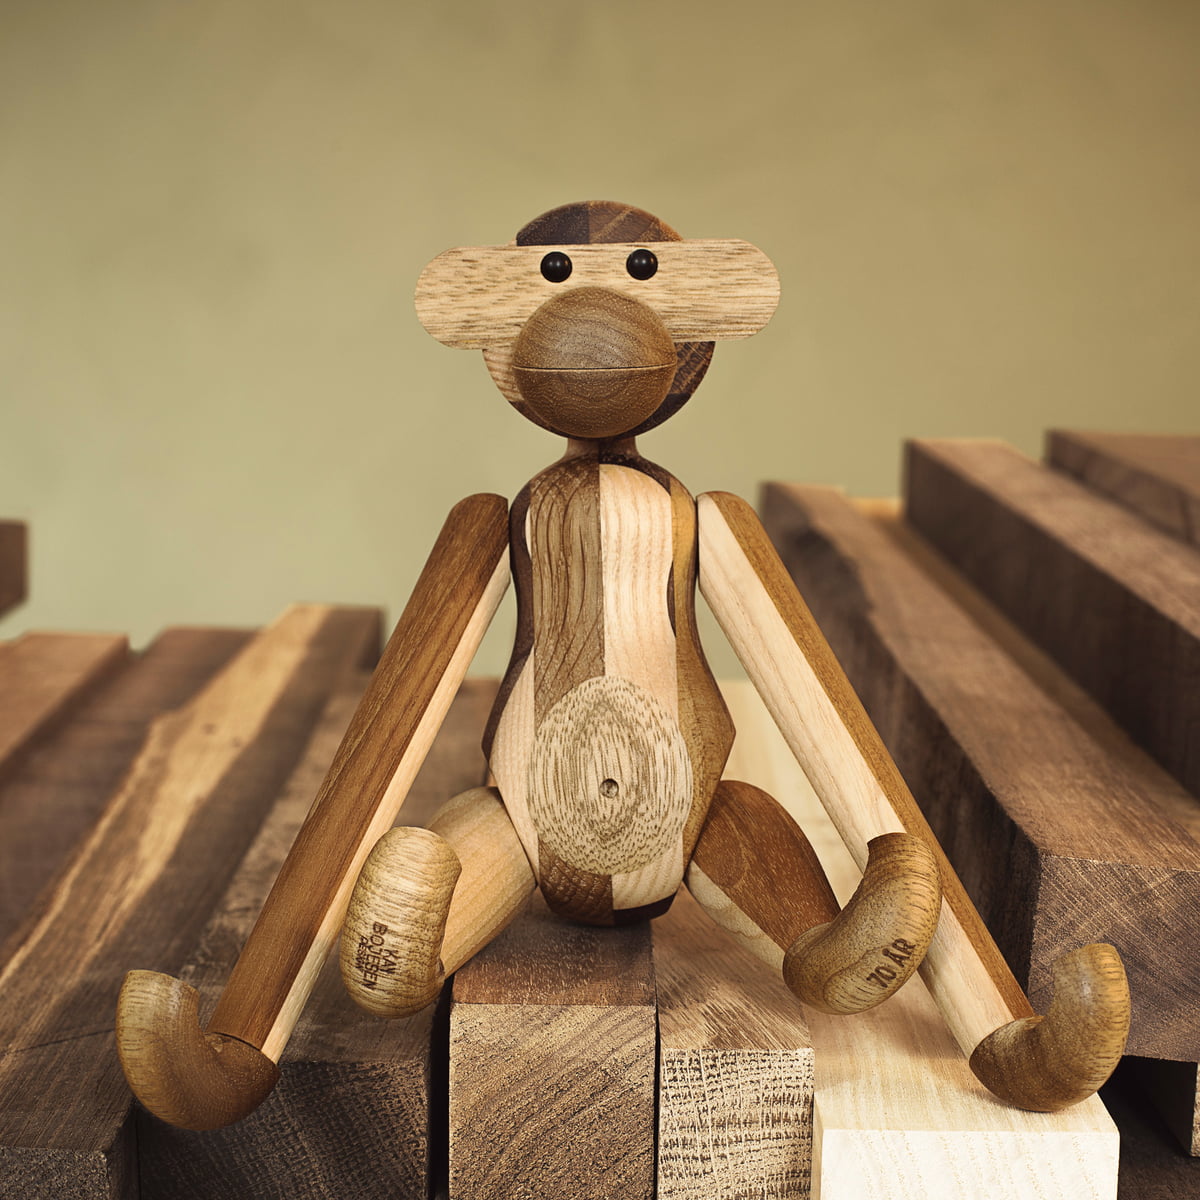 Kay Bojesen Monkey重新设计的混合木材，Mini